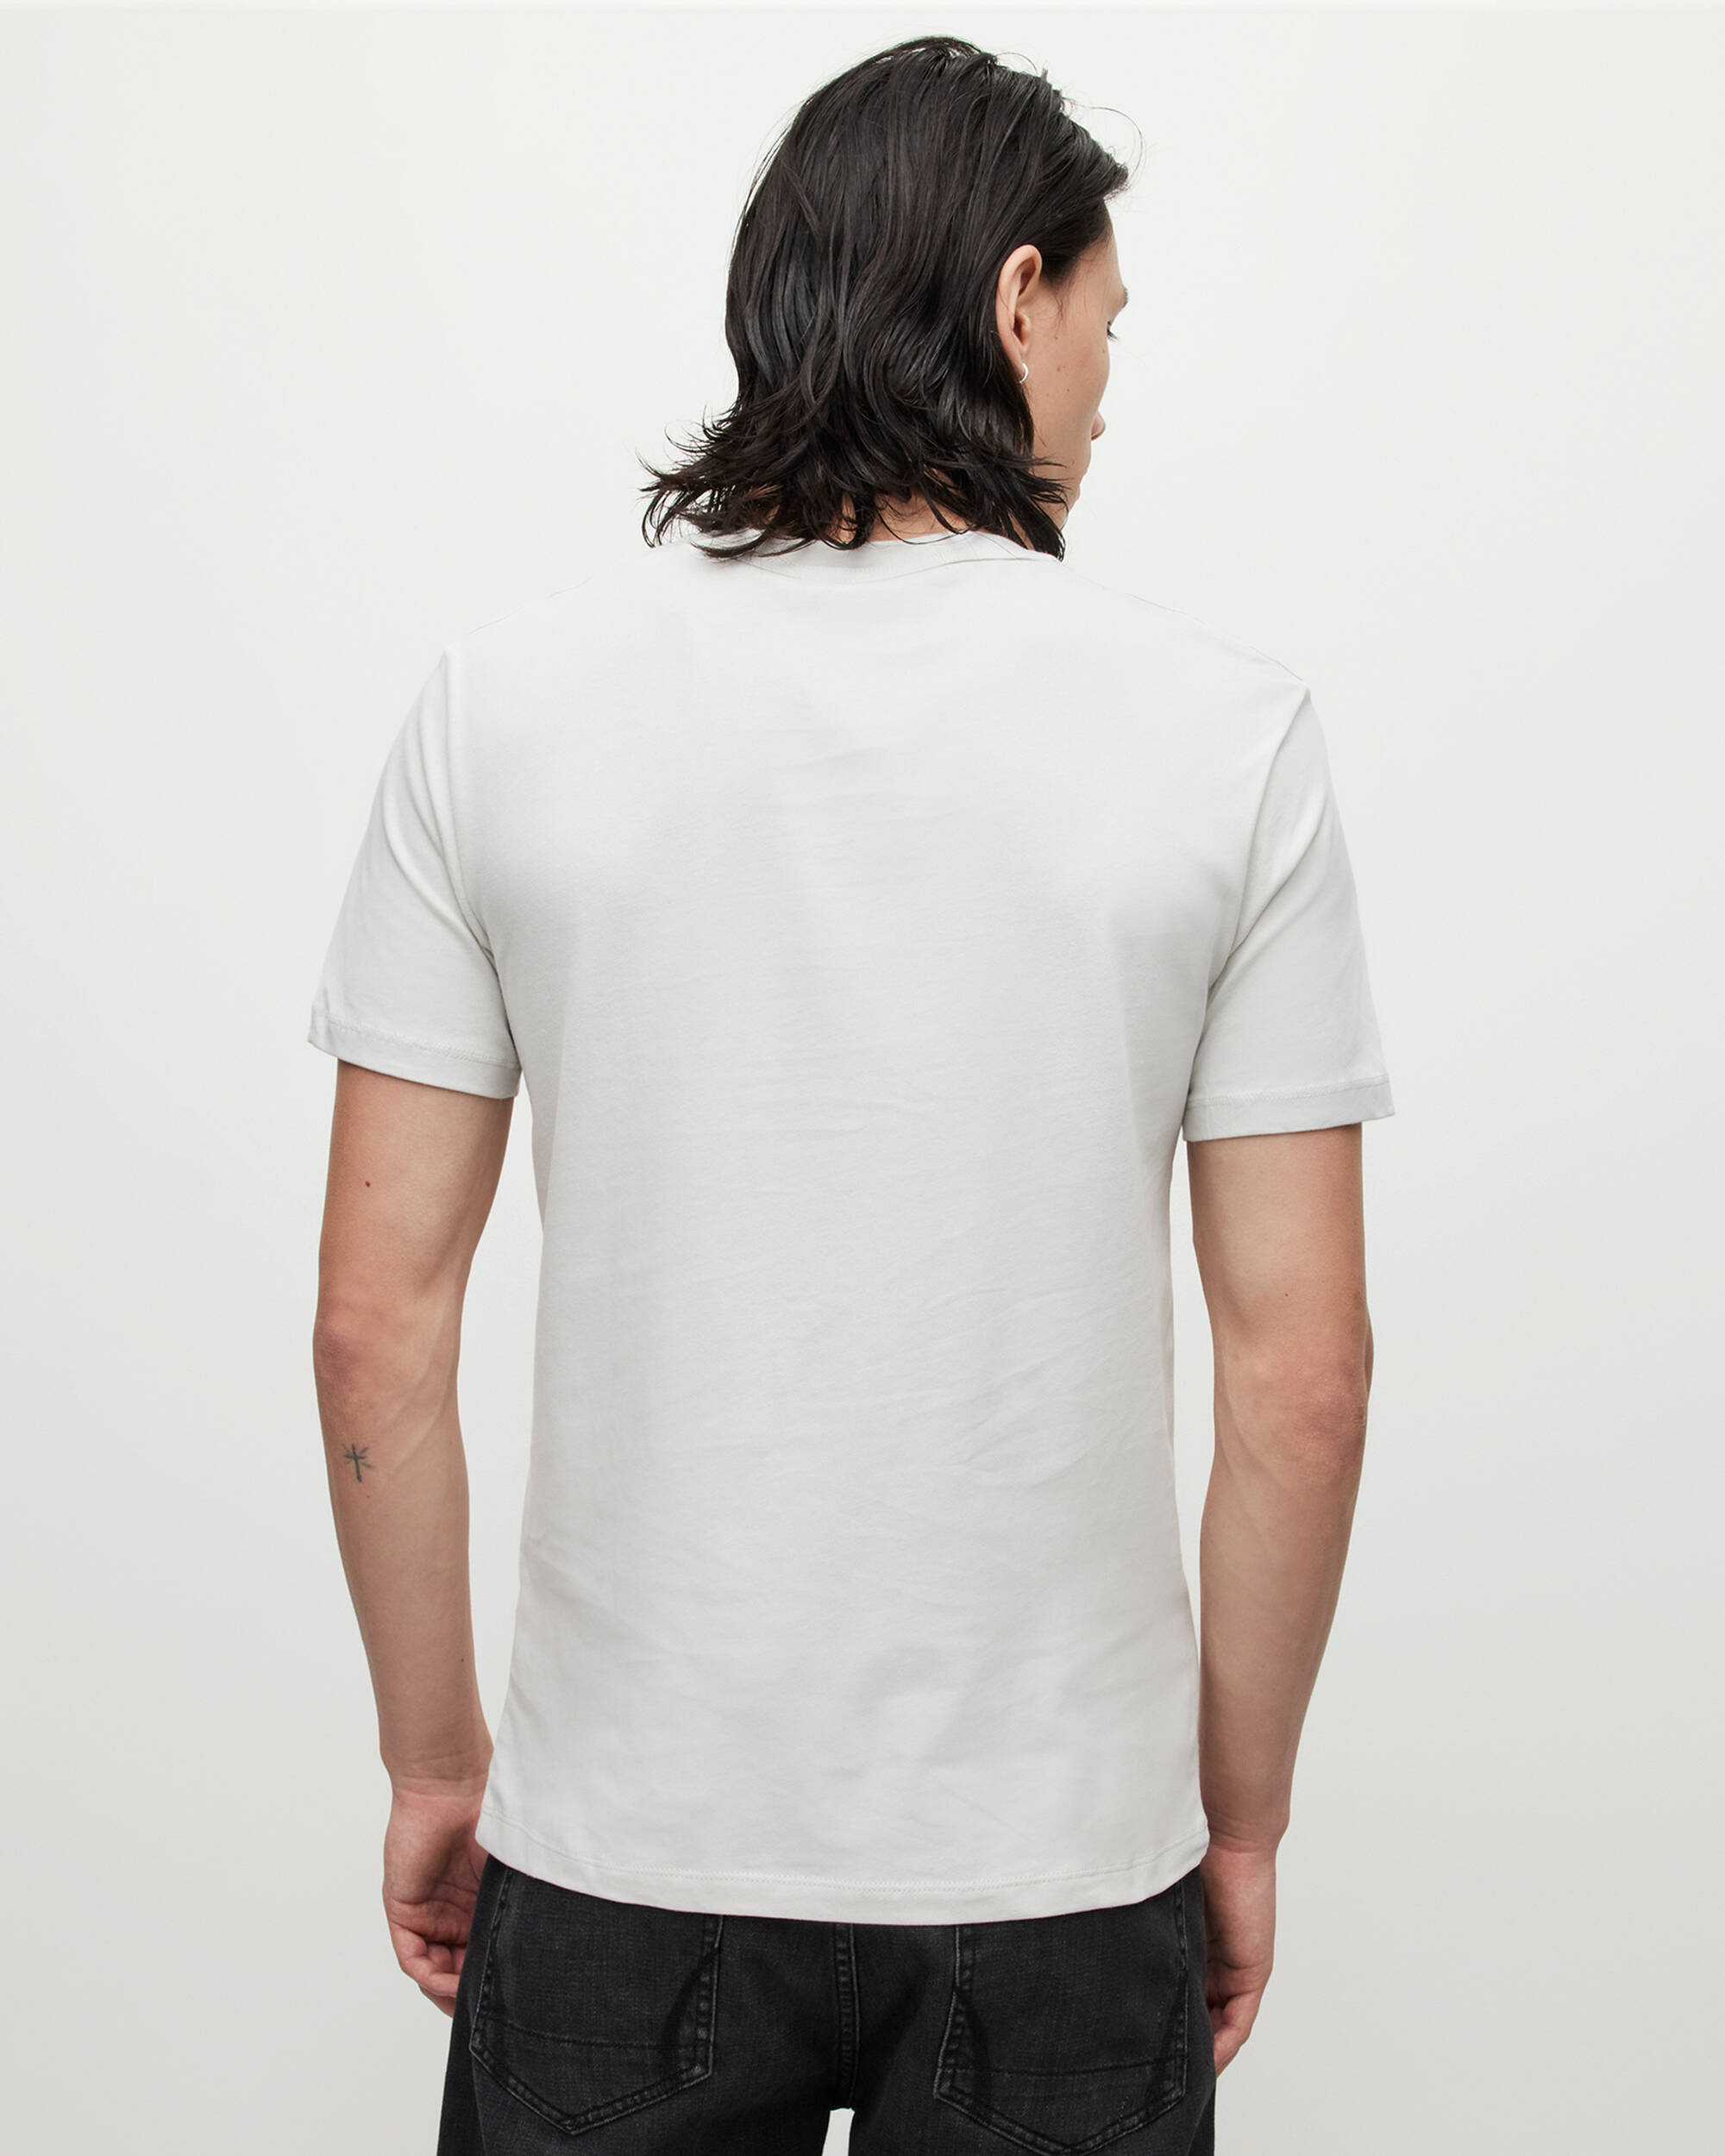 Onderzoek Weekendtas Onbevredigend Brace Brushed Cotton T-Shirt 3 Pack GRY/PINK/MTAL GRY | ALLSAINTS US